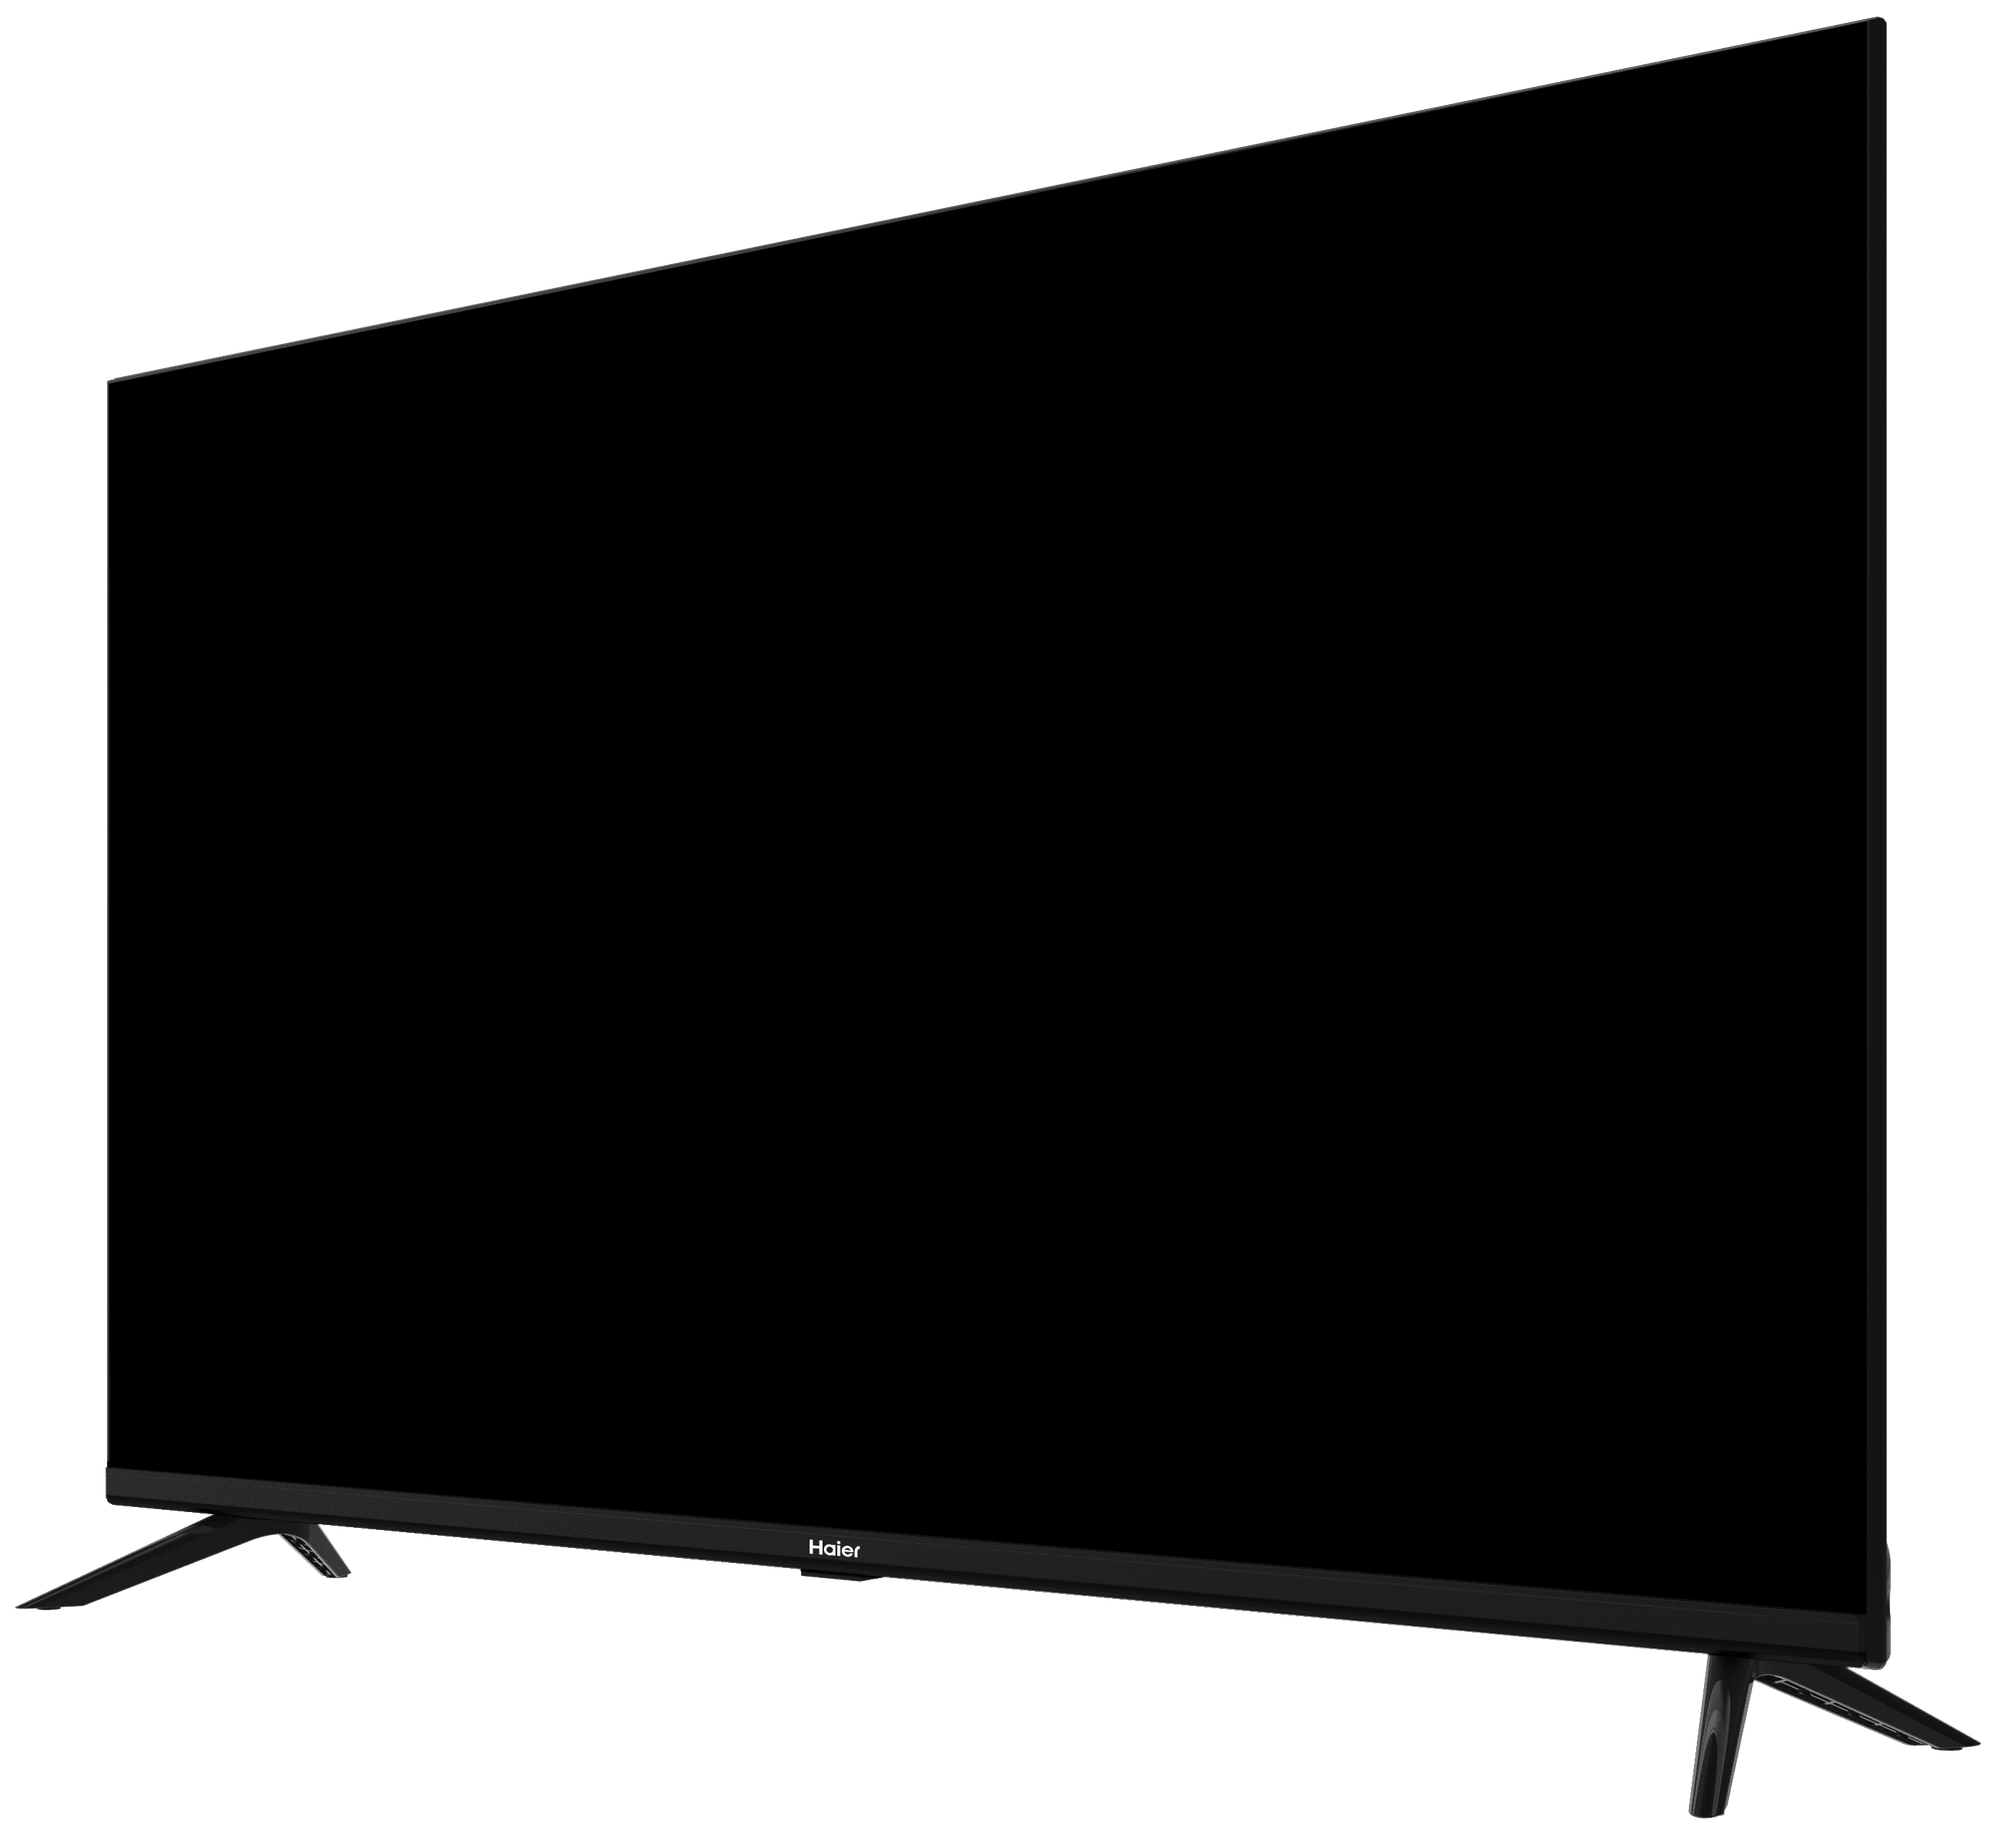 Телевизор Haier 50 Smart TV DX2